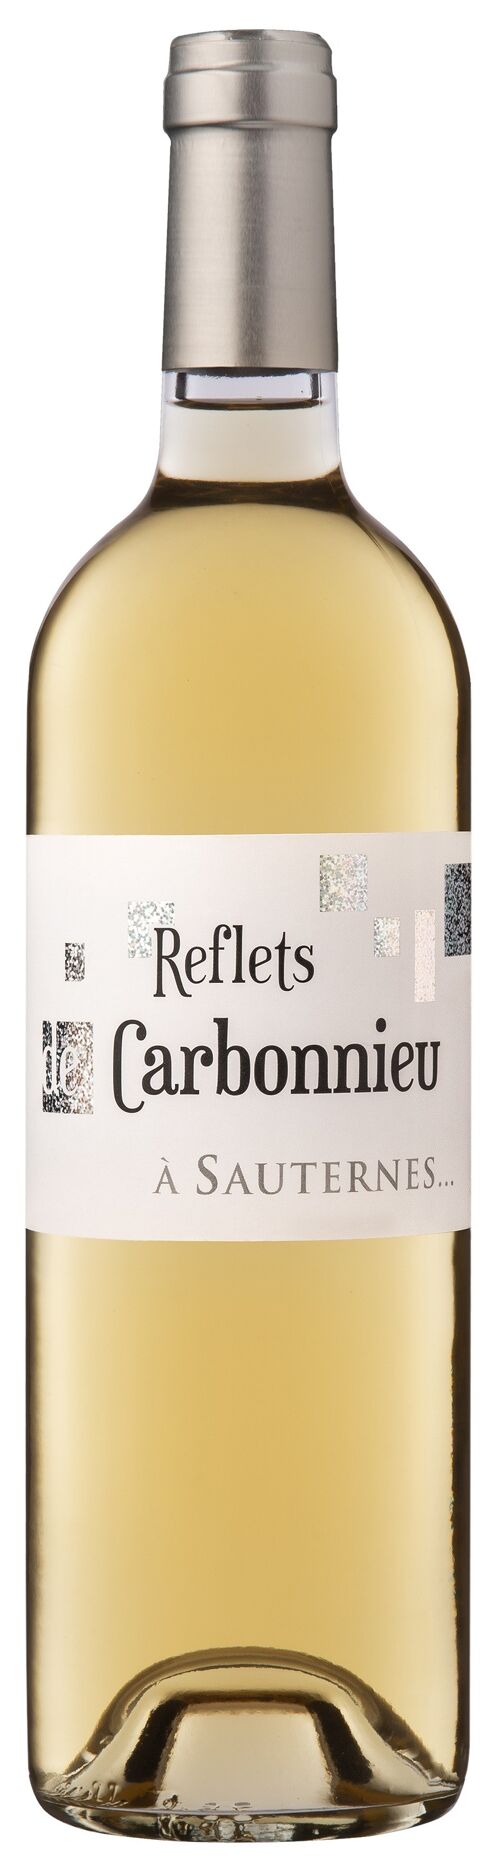 Reflets de Carbonnieu SAUTERNES 2019 Liquoreux / Sweet Wine / HVE3